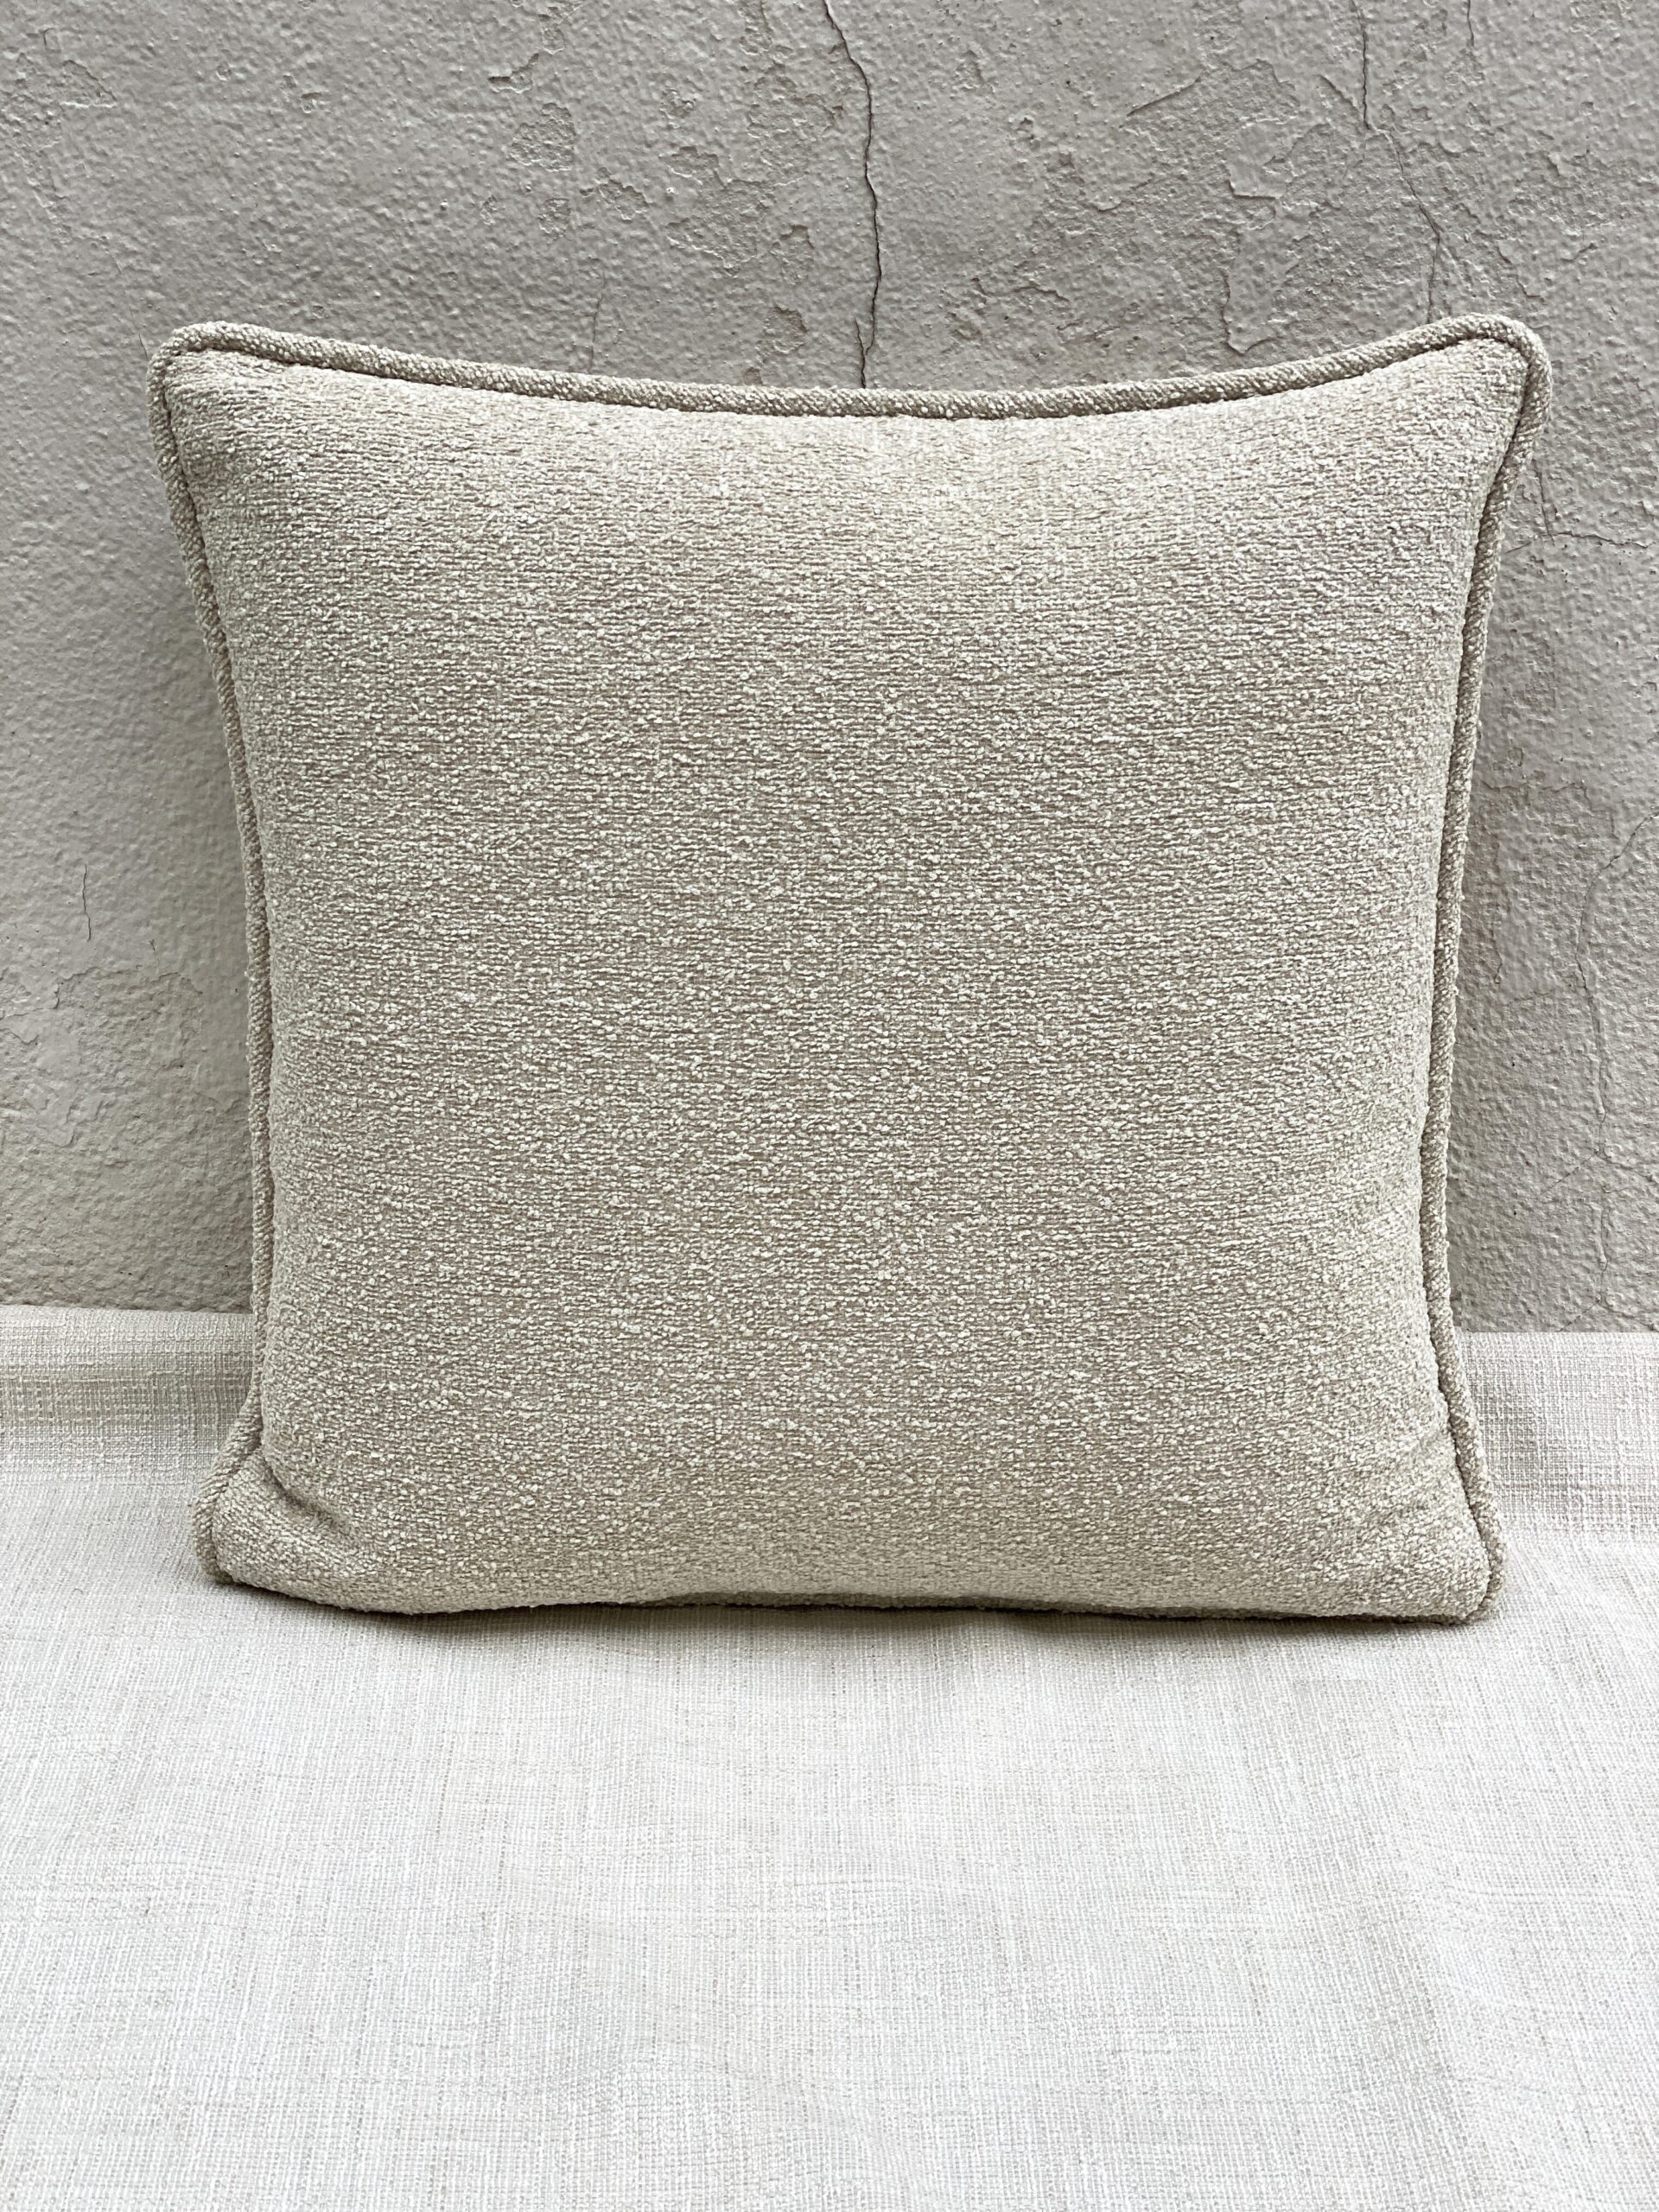 Kirkby Design Gobi Pillows